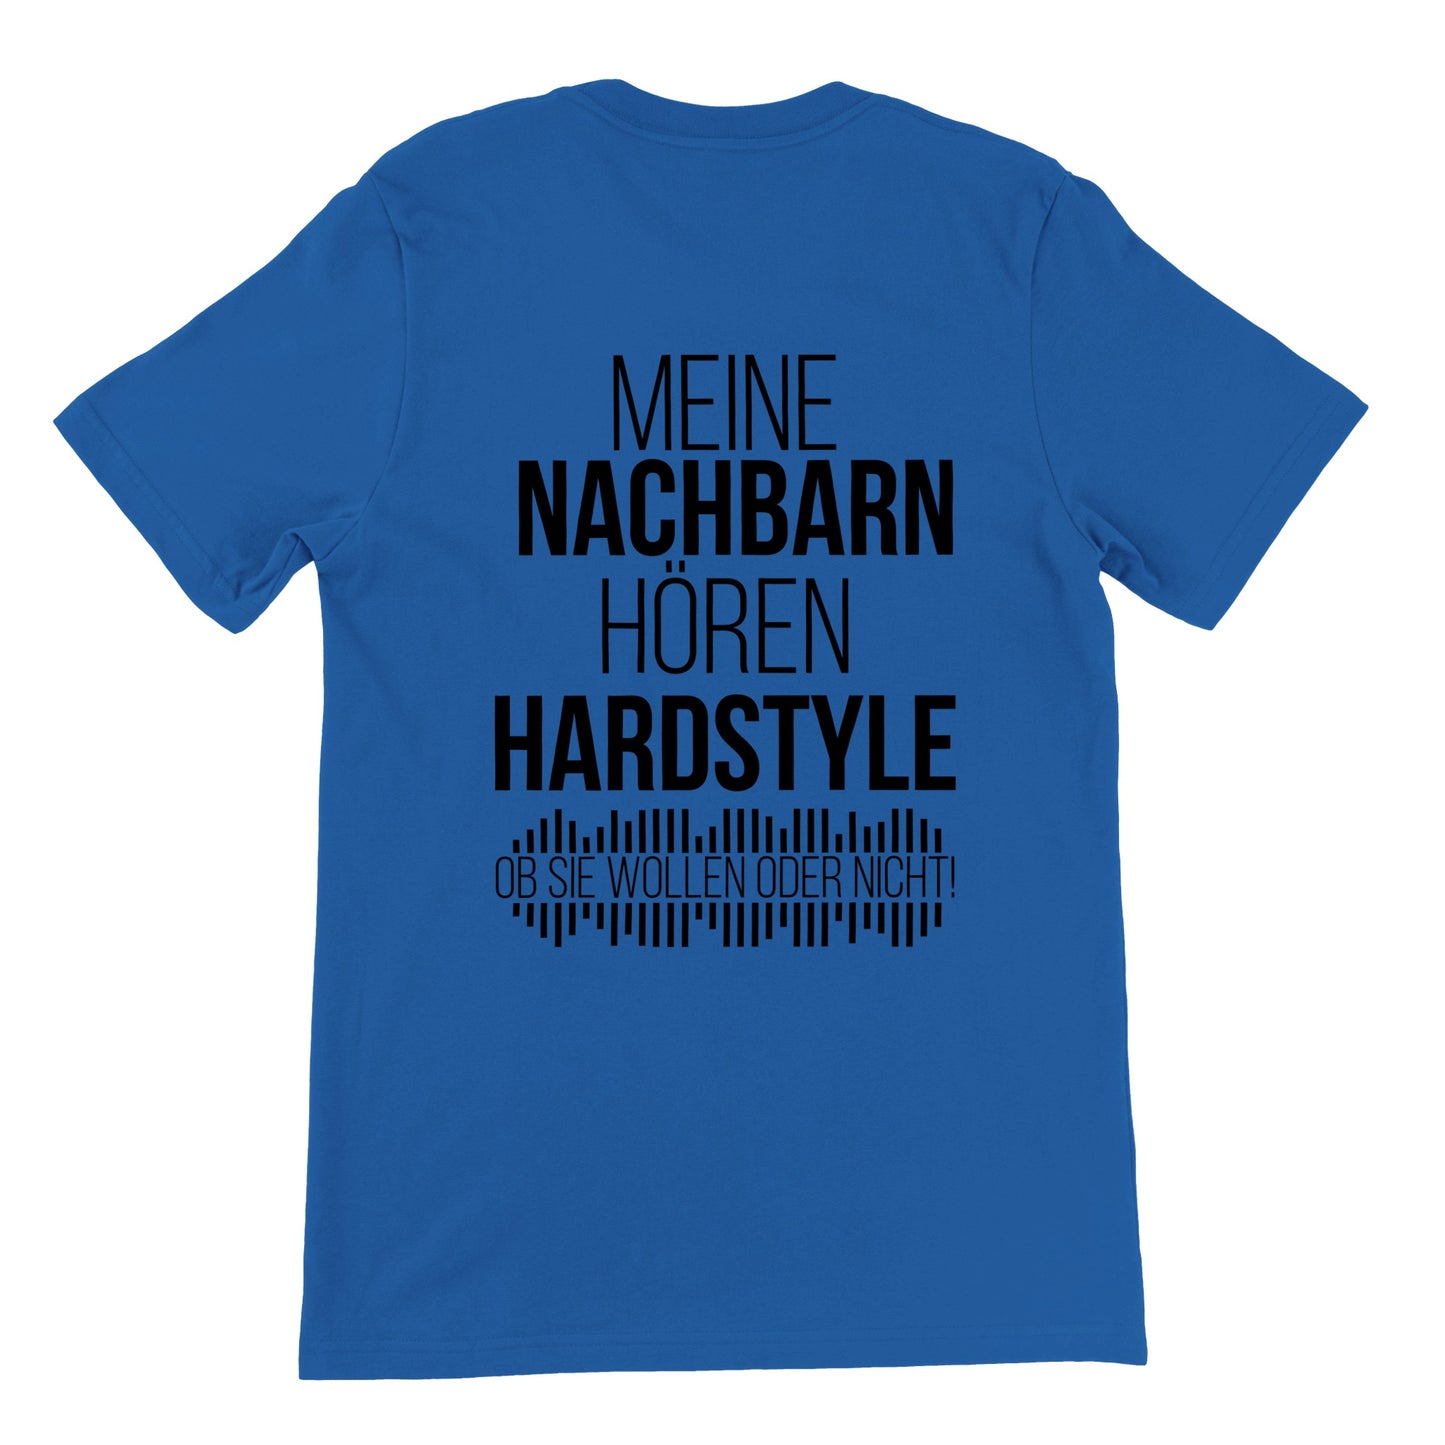 Meine Nachbarn hören Hardstyle - Premium Männer / Unisex T-Shirt mit Rundhalsausschnitt